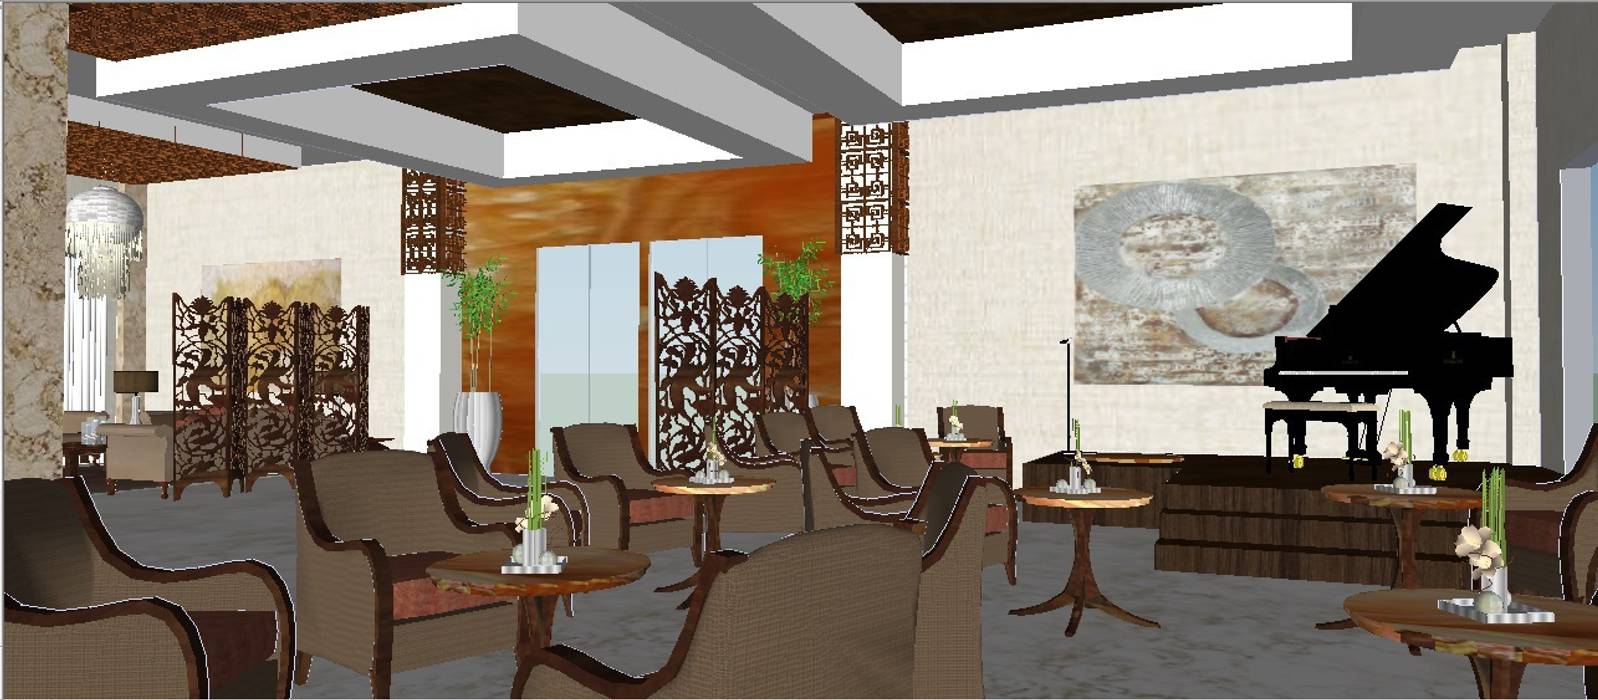 Proyecto Hotel Estilo Oriental / Oriental Style Hotel Project, Julia Design Julia Design Espacios comerciales Hoteles